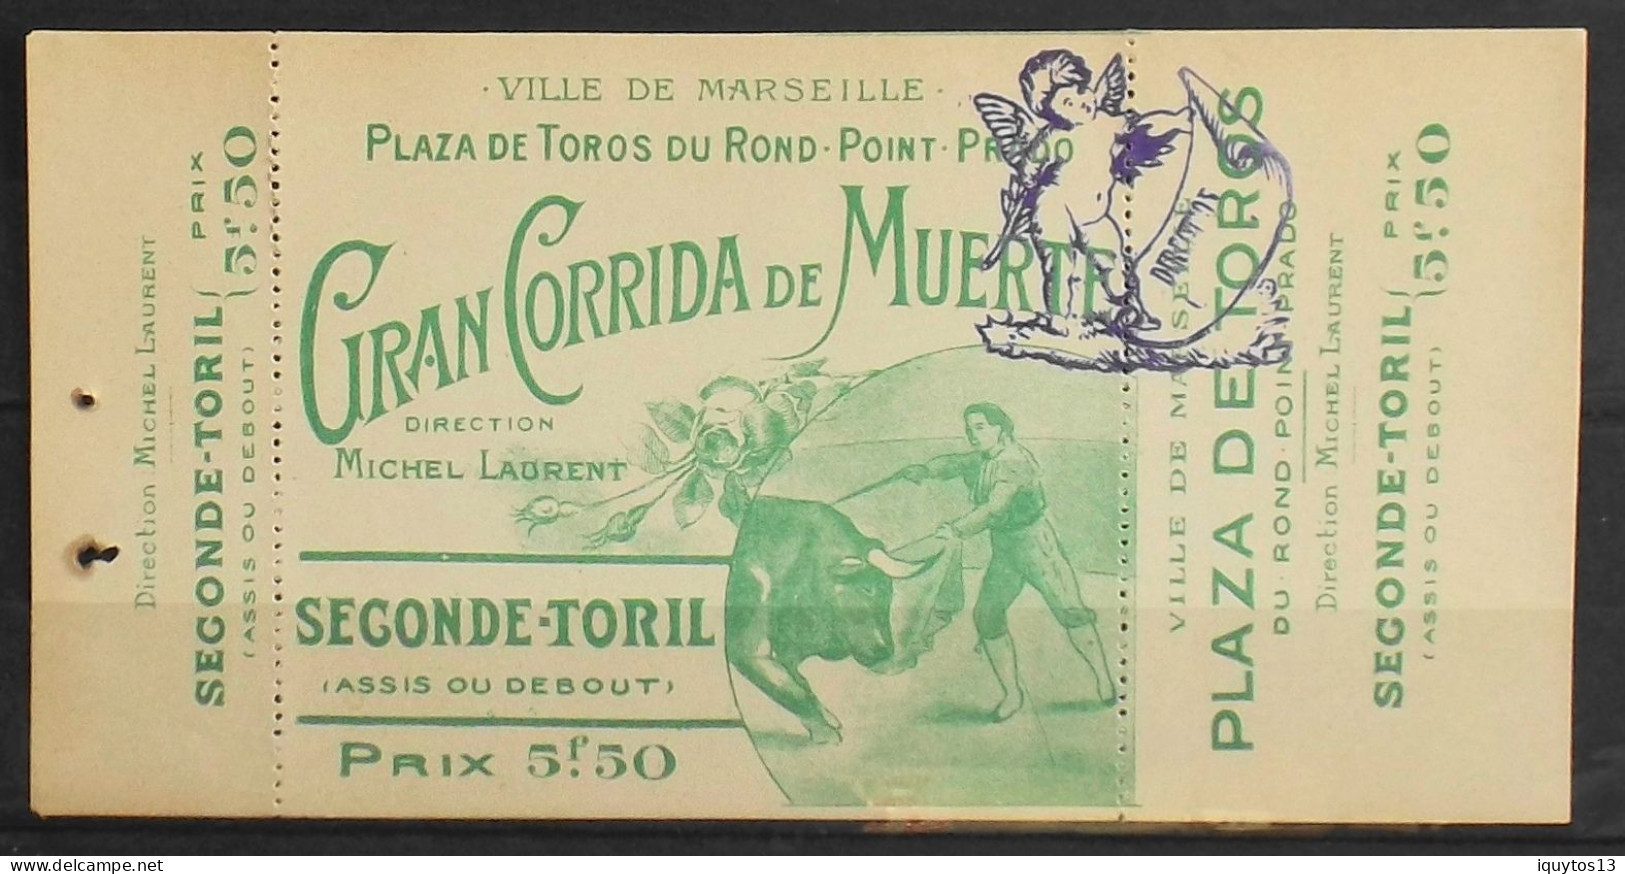 Carte D'Entrée SECONDE -TORIL > Ville De Marseille > Plaza De Toros Du Rond Point Prado - Direction Michel Laurent - TBE - Tickets D'entrée